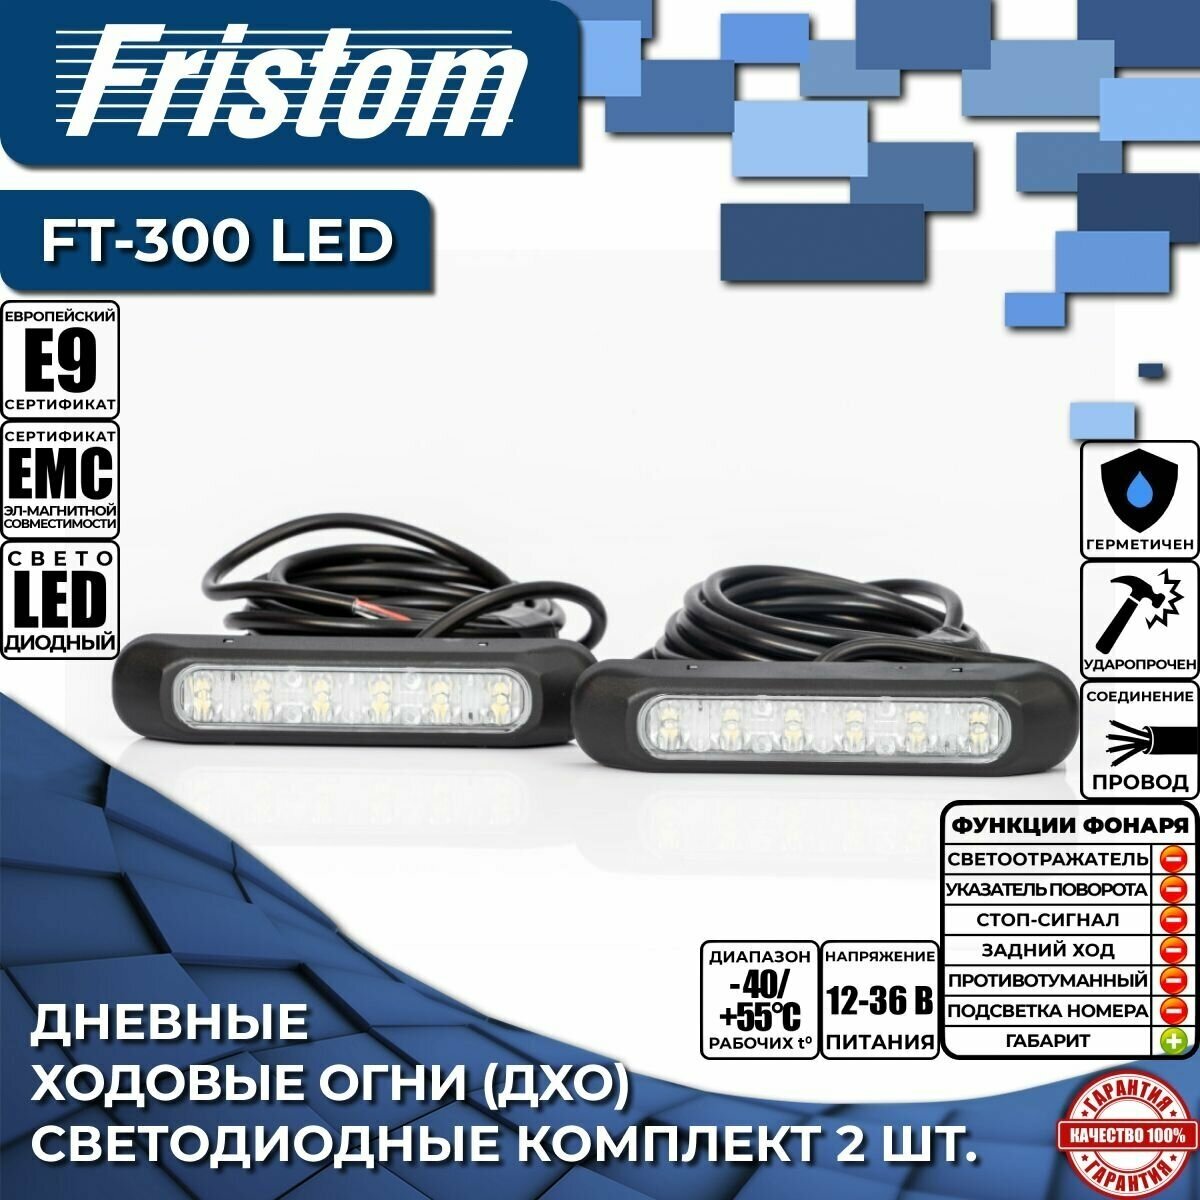 Дневные ходовые огни (ДХО) светодиодные Fristom FT-300 LED с проводом 3.5 м (комплект 2 шт.)